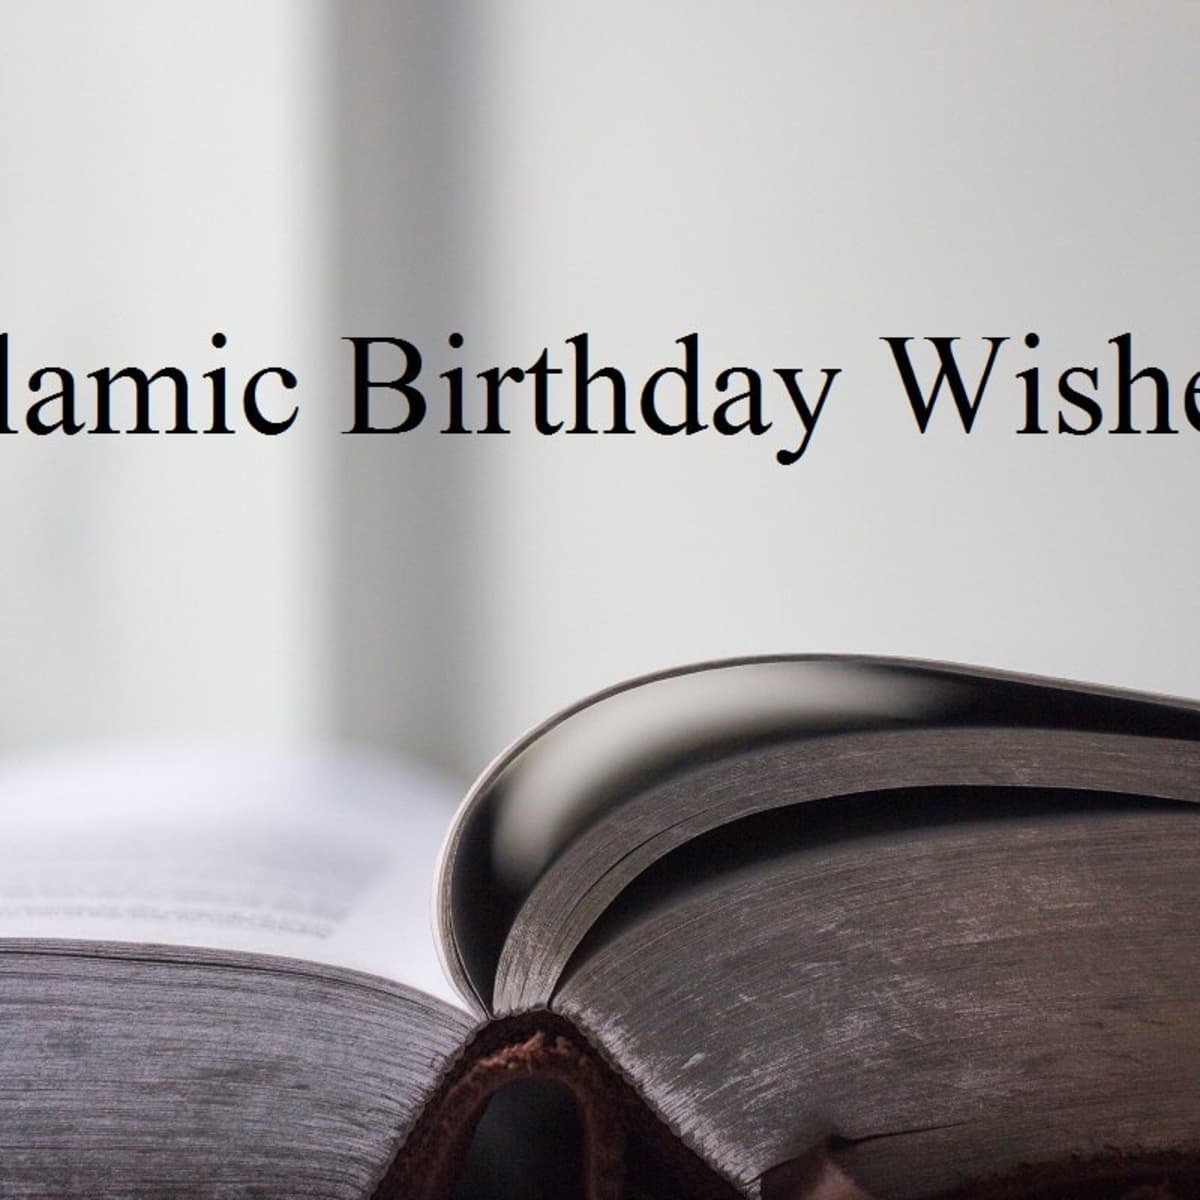 Happy Birthday Wishes In Islamic Style - werohmedia